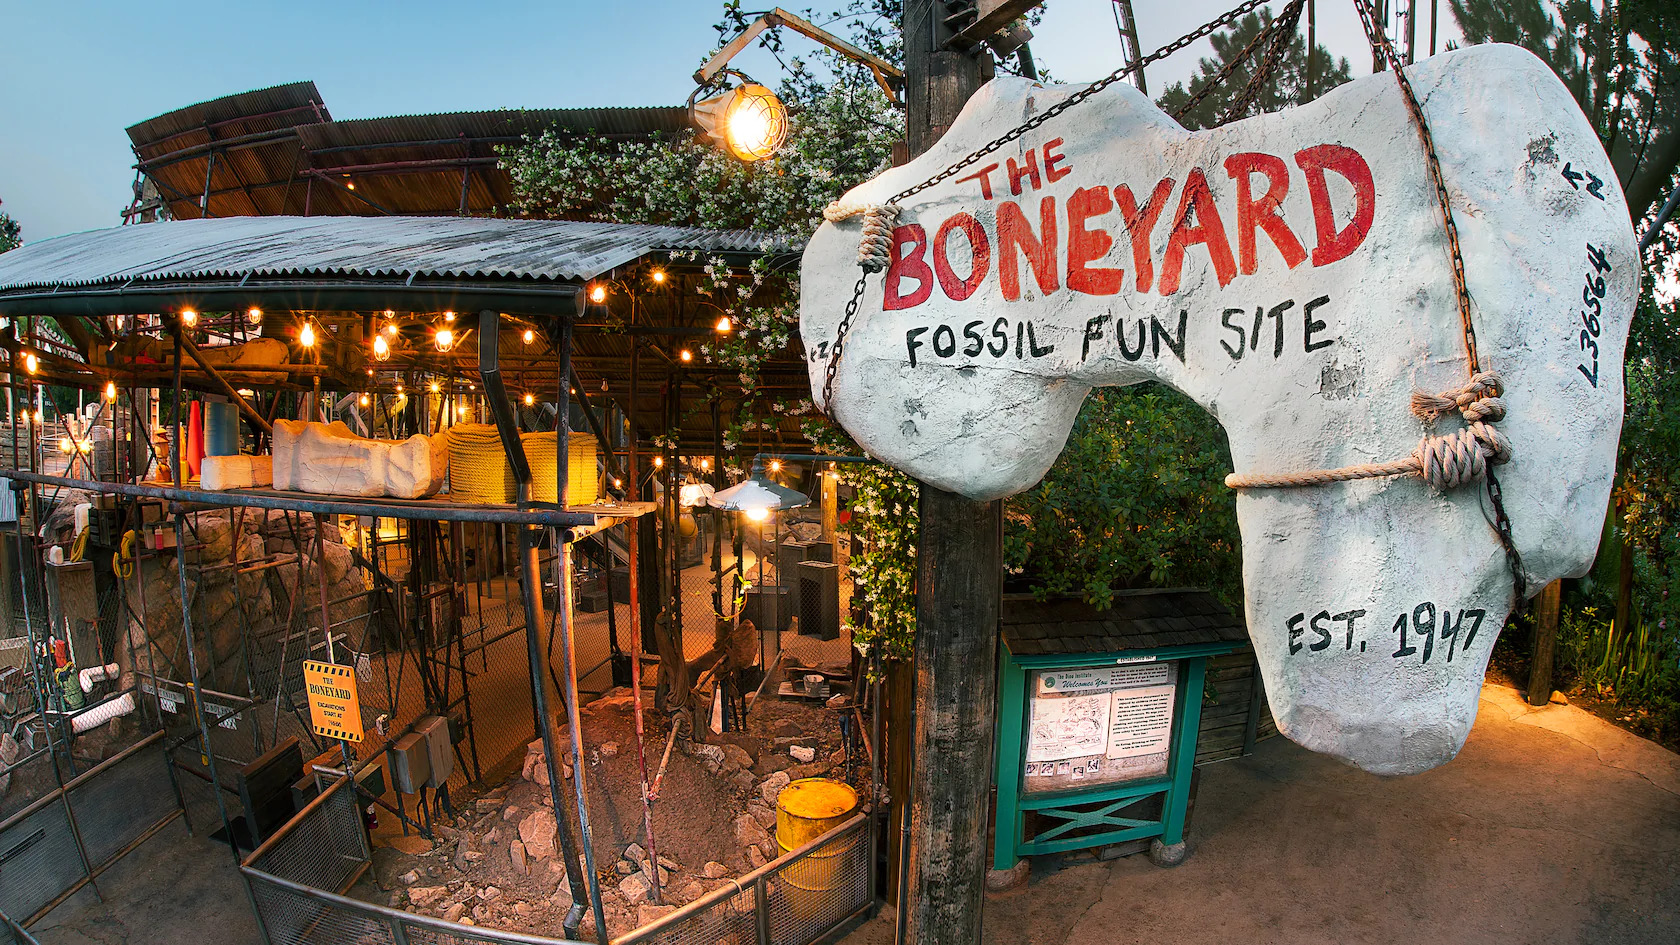 The Boneyard at Animal Kingdom Theme Park